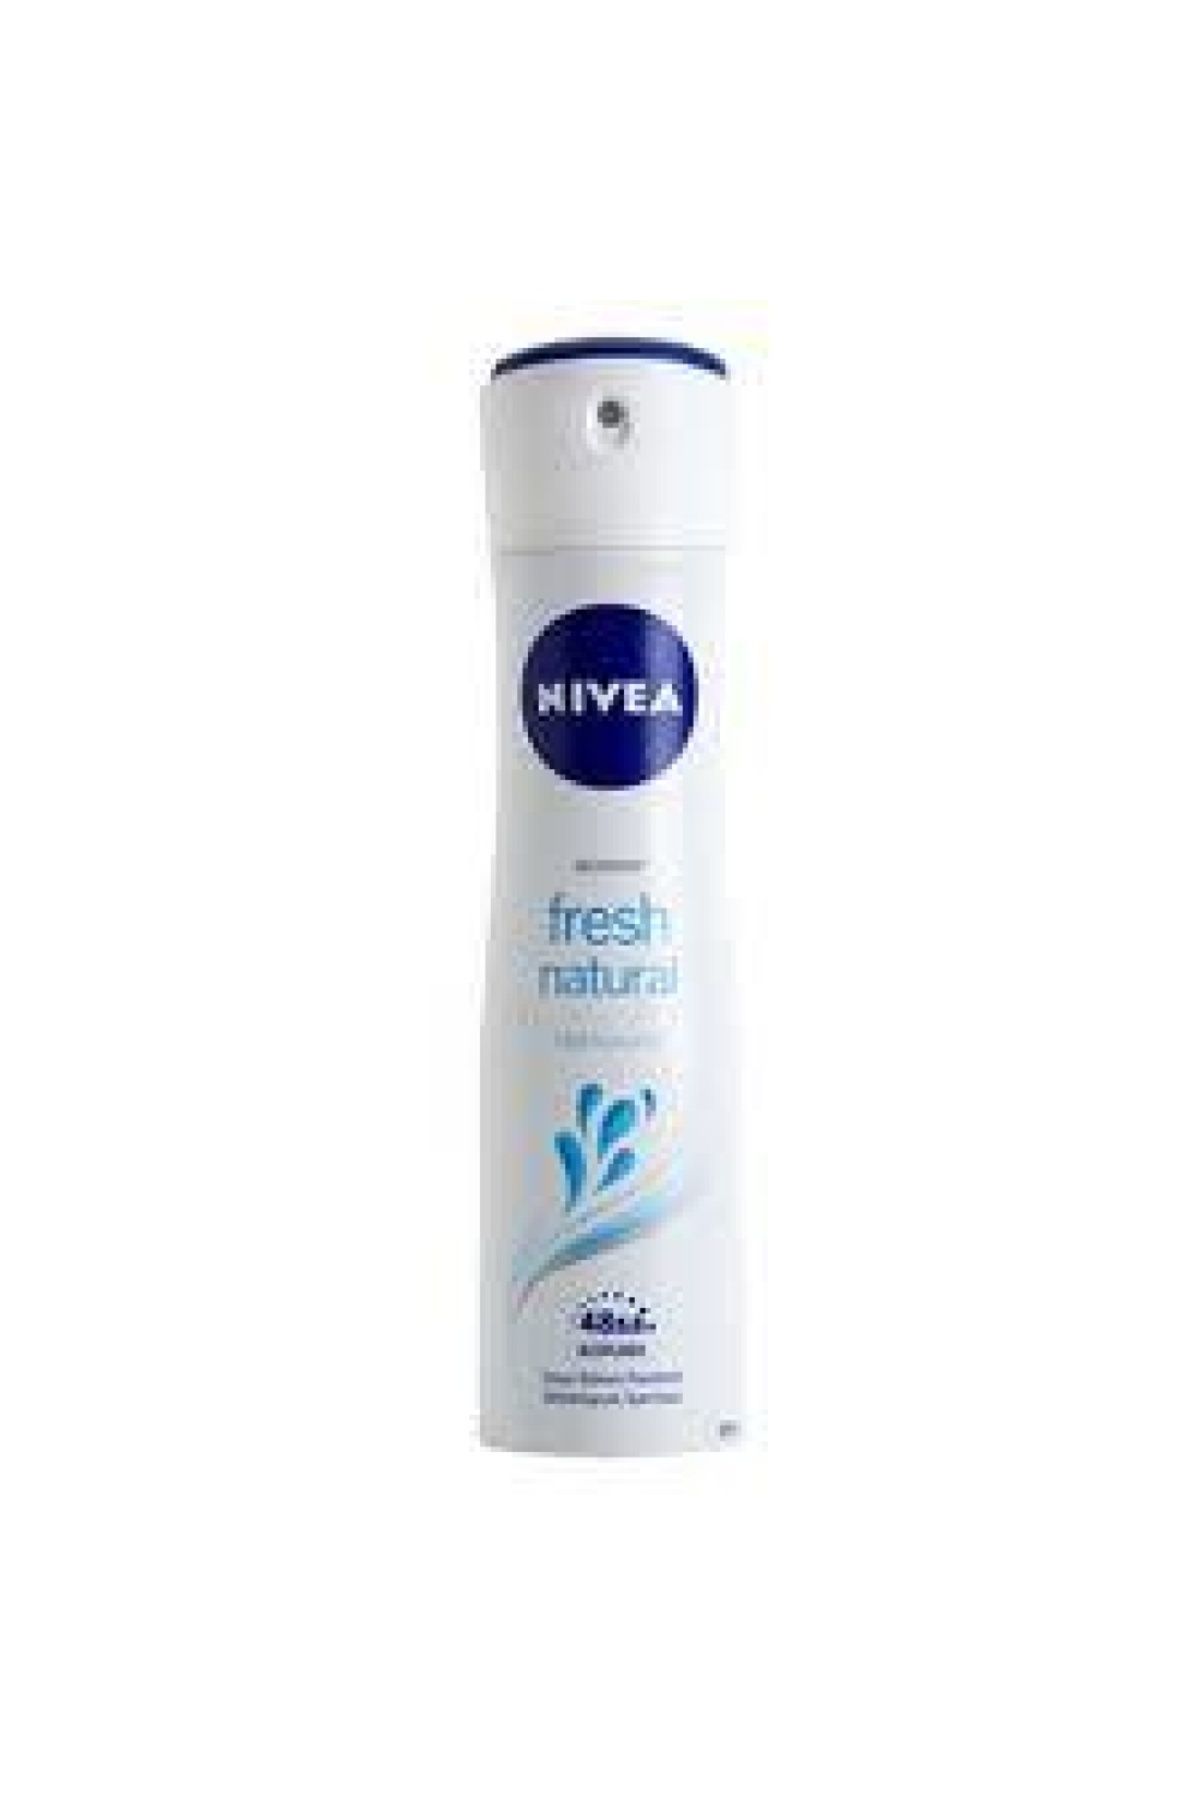 NIVEA Fresh Natural Kadın Sprey Deodorant 150 ml